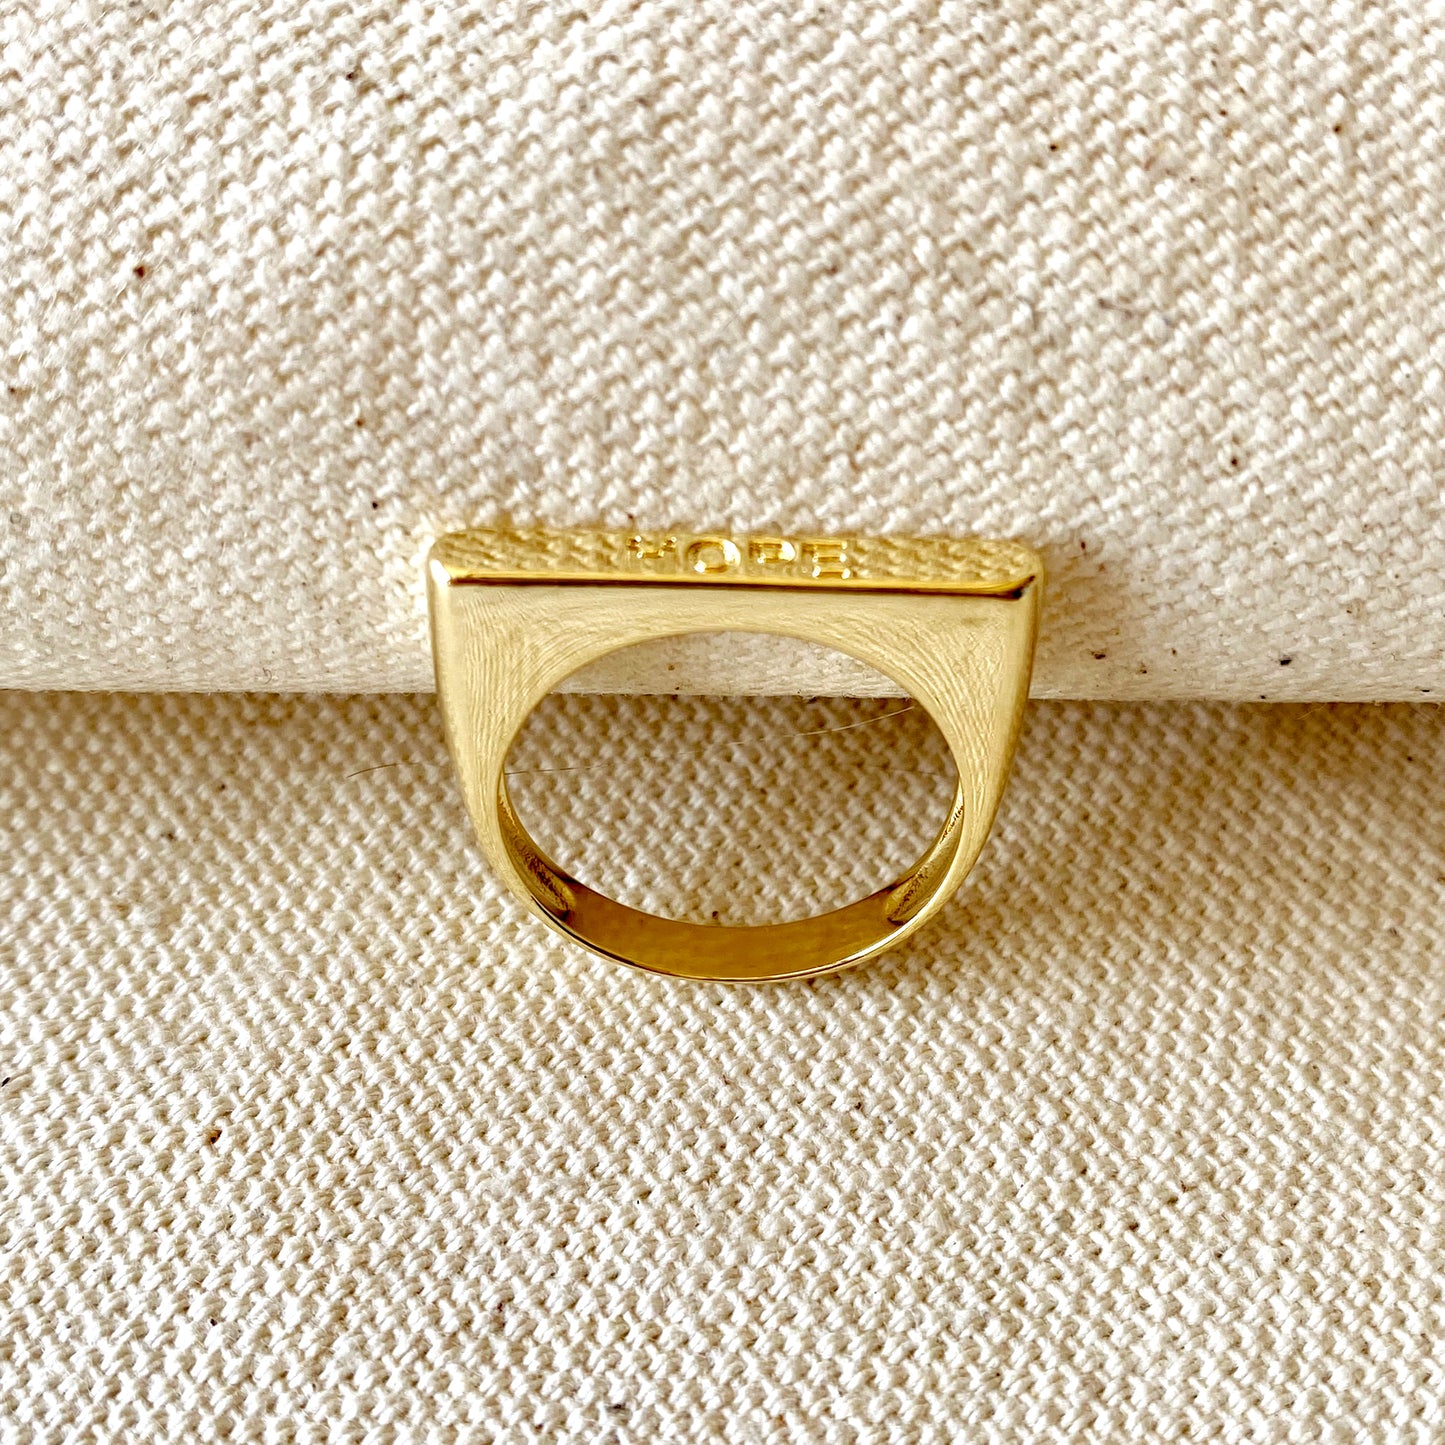 GoldFi 18k Gold Filled Hope Engraved Stackable Ring